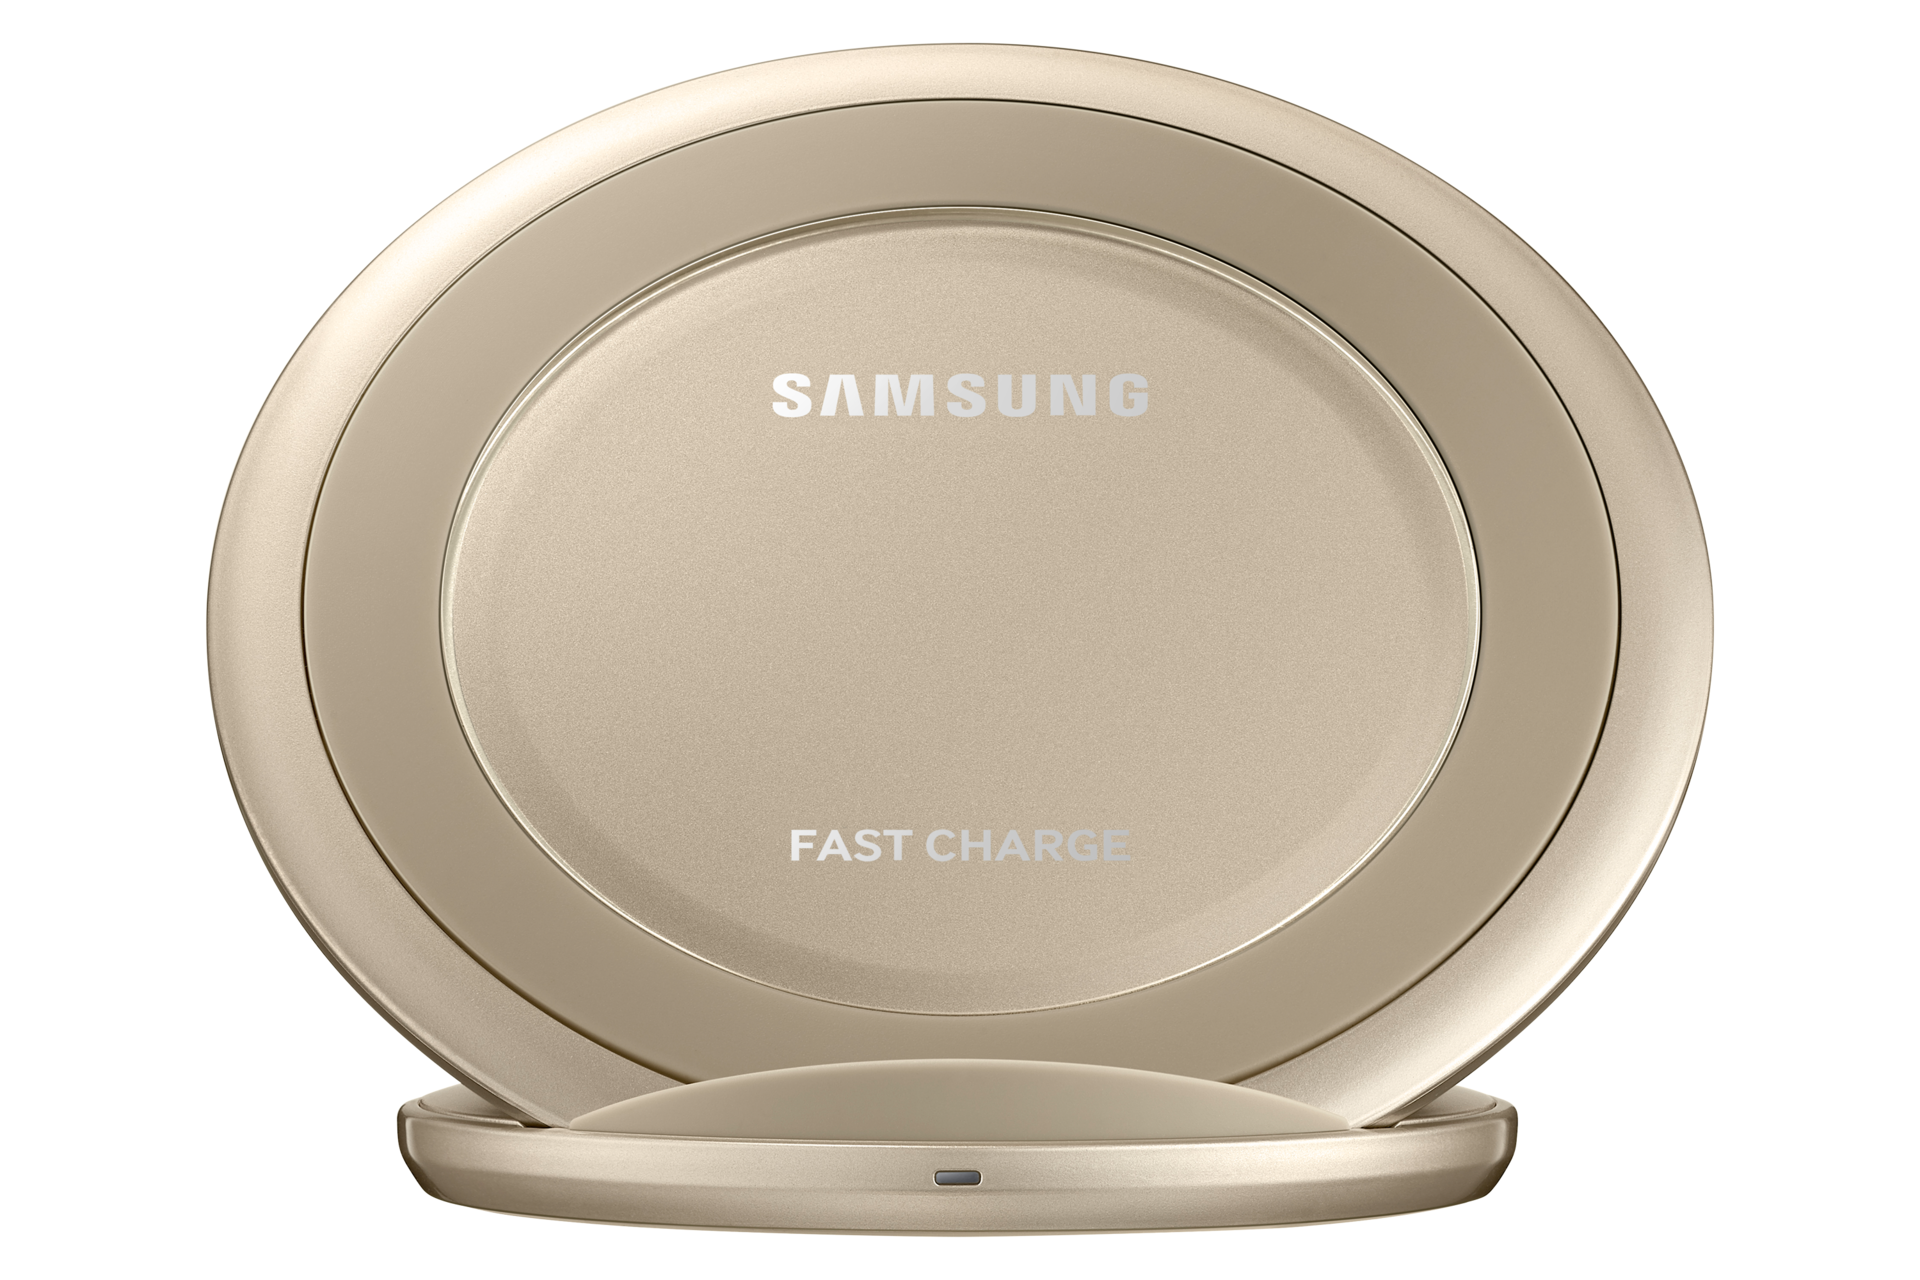 Chargeur Samsung sans fil Stand avec alim (Wireless) Couleur Noir